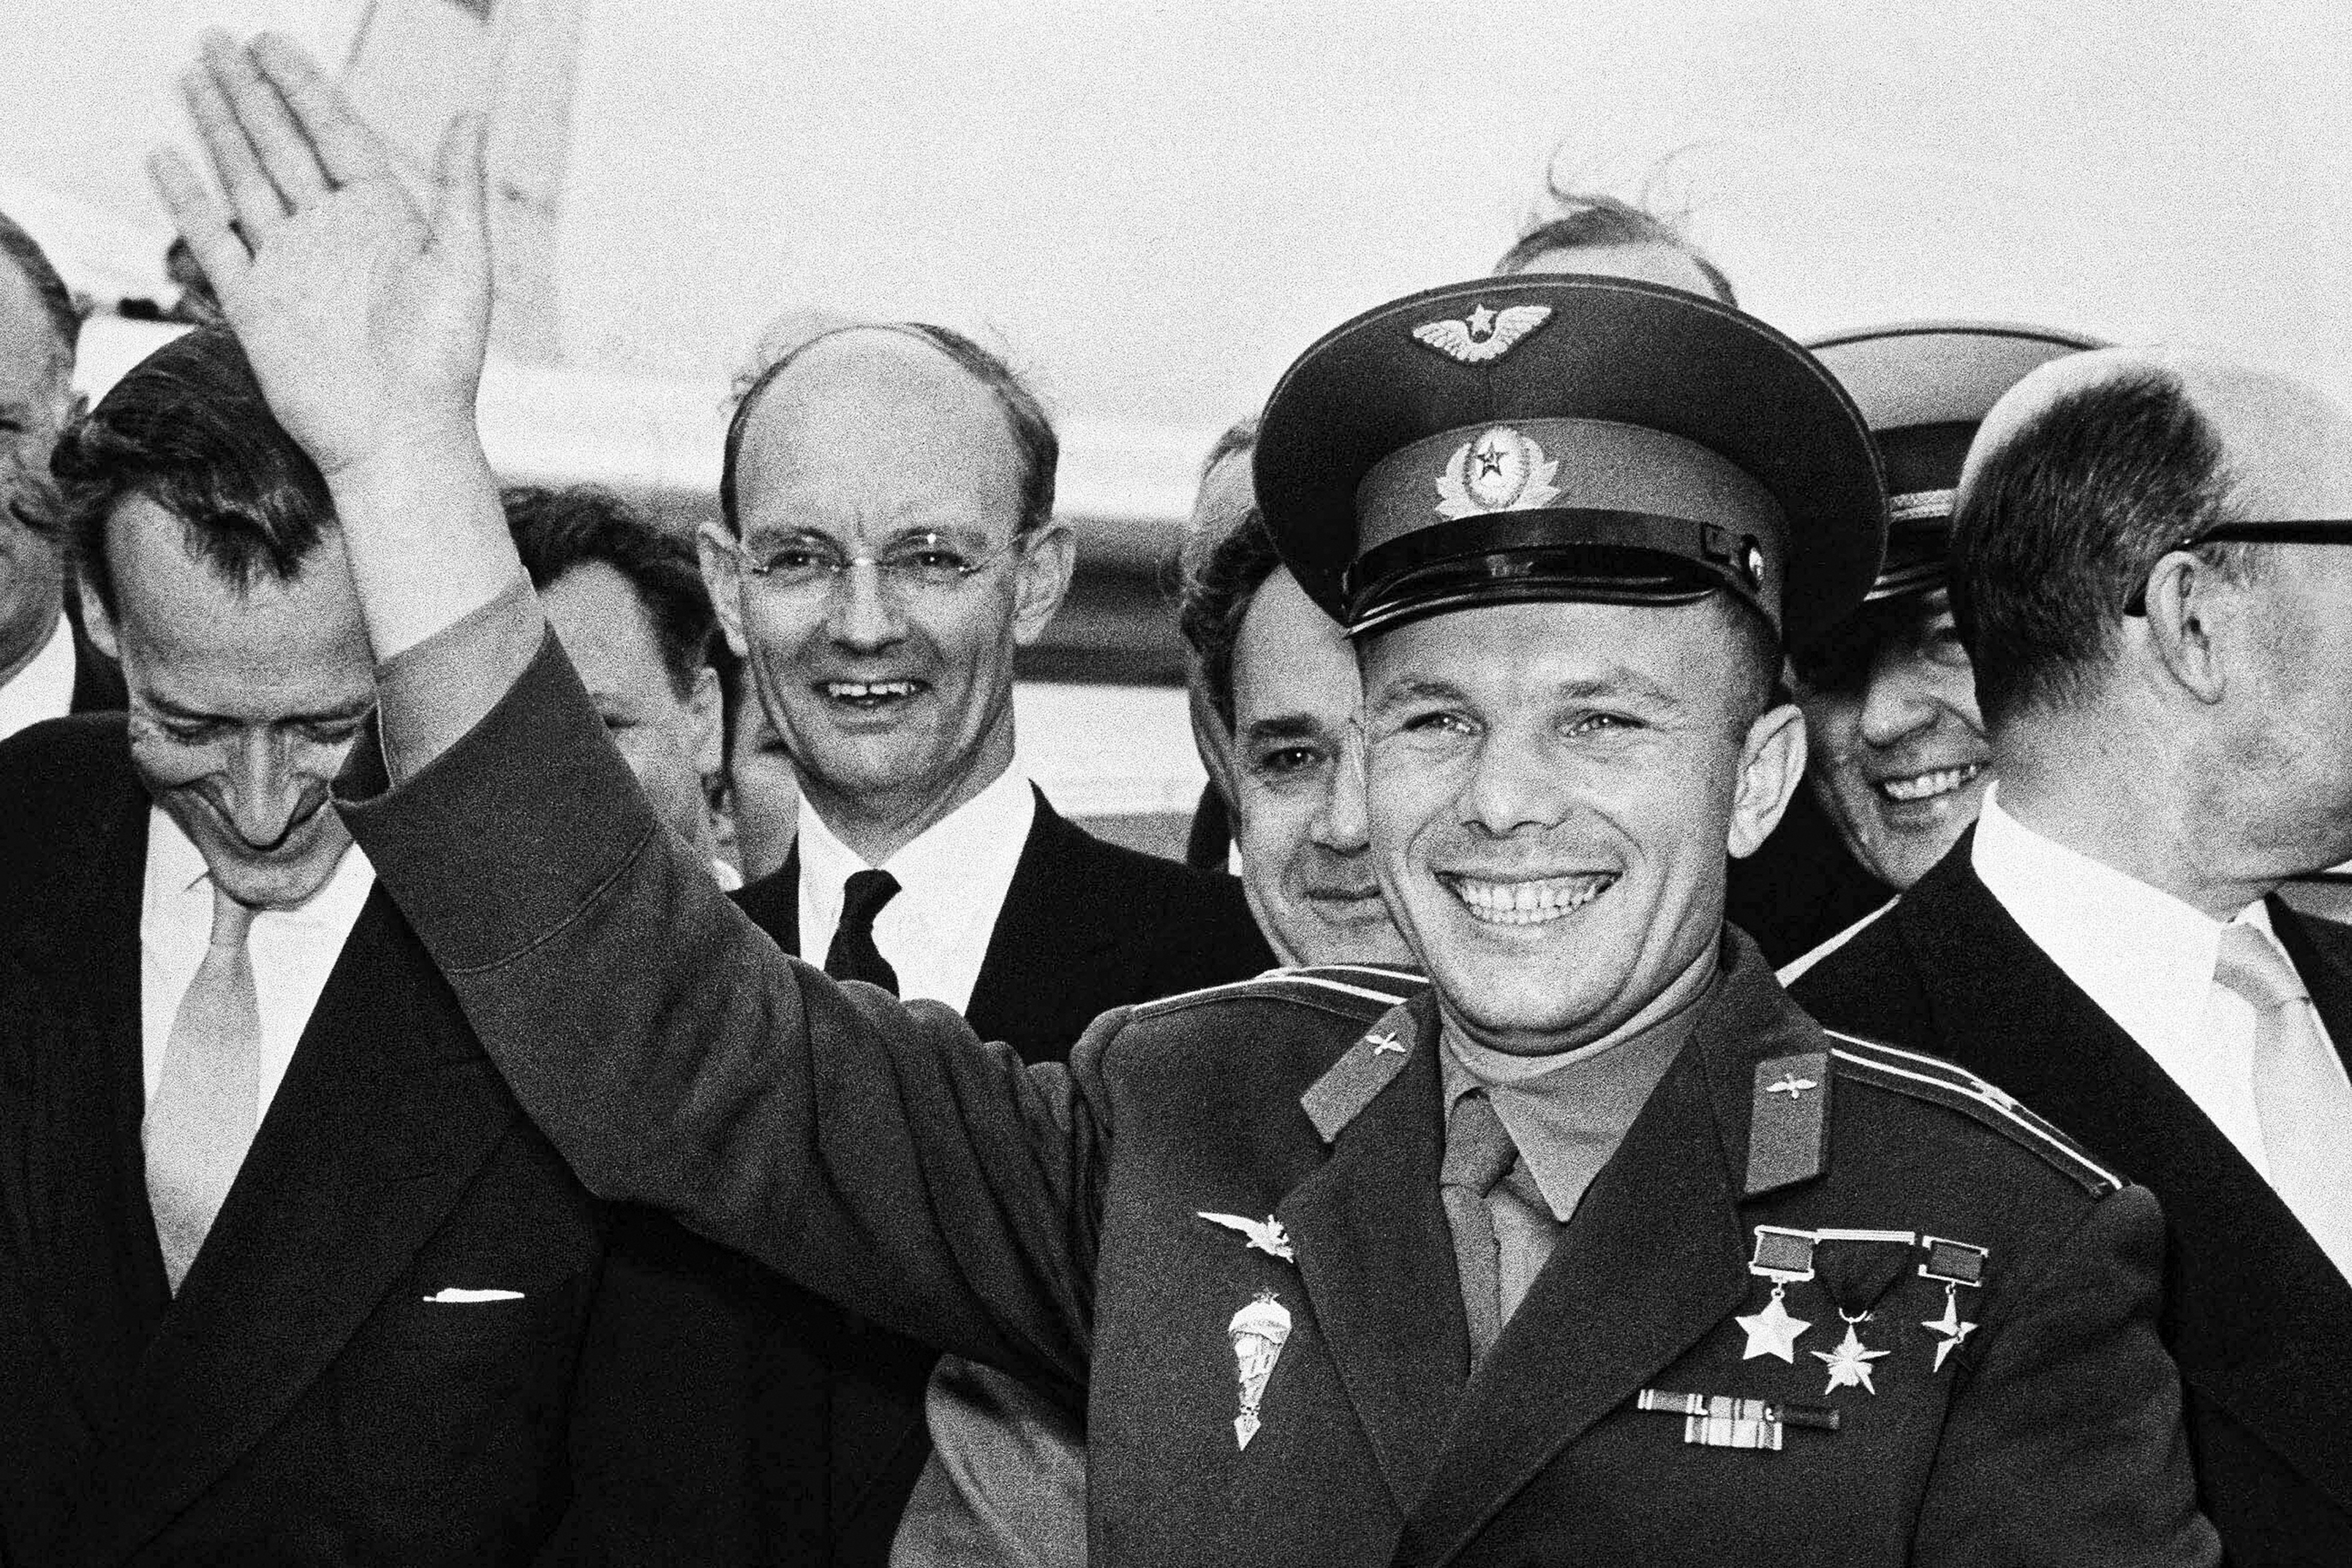 ARCHIVO - El astronauta soviético Yuri Gagarin saluda después de llegar al aeropuerto de Londres, para una visita privada como invitado de la feria comercial rusa, el 11 de julio de 1961. El exitoso vuelo de una órbita el 12 de abril de 1961 hizo que el joven de 27 años Gagarin un héroe nacional y consolidó la supremacía soviética en el espacio hasta que Estados Unidos puso a un hombre en la luna más de ocho años después. 

